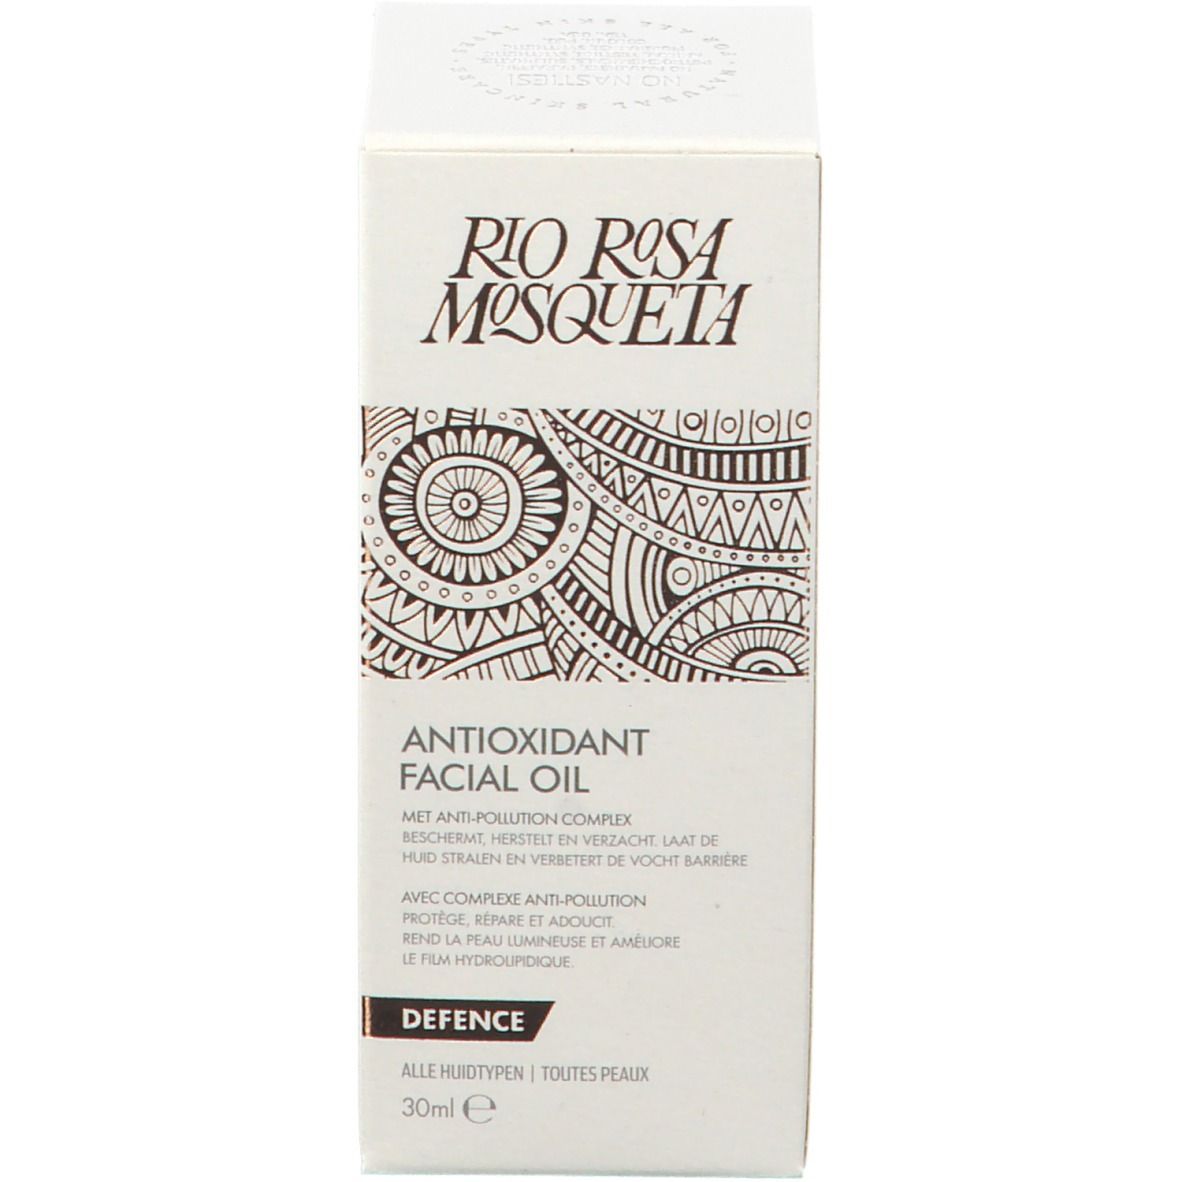 Rio Rosa Mosqueta Antioxidant facial oil